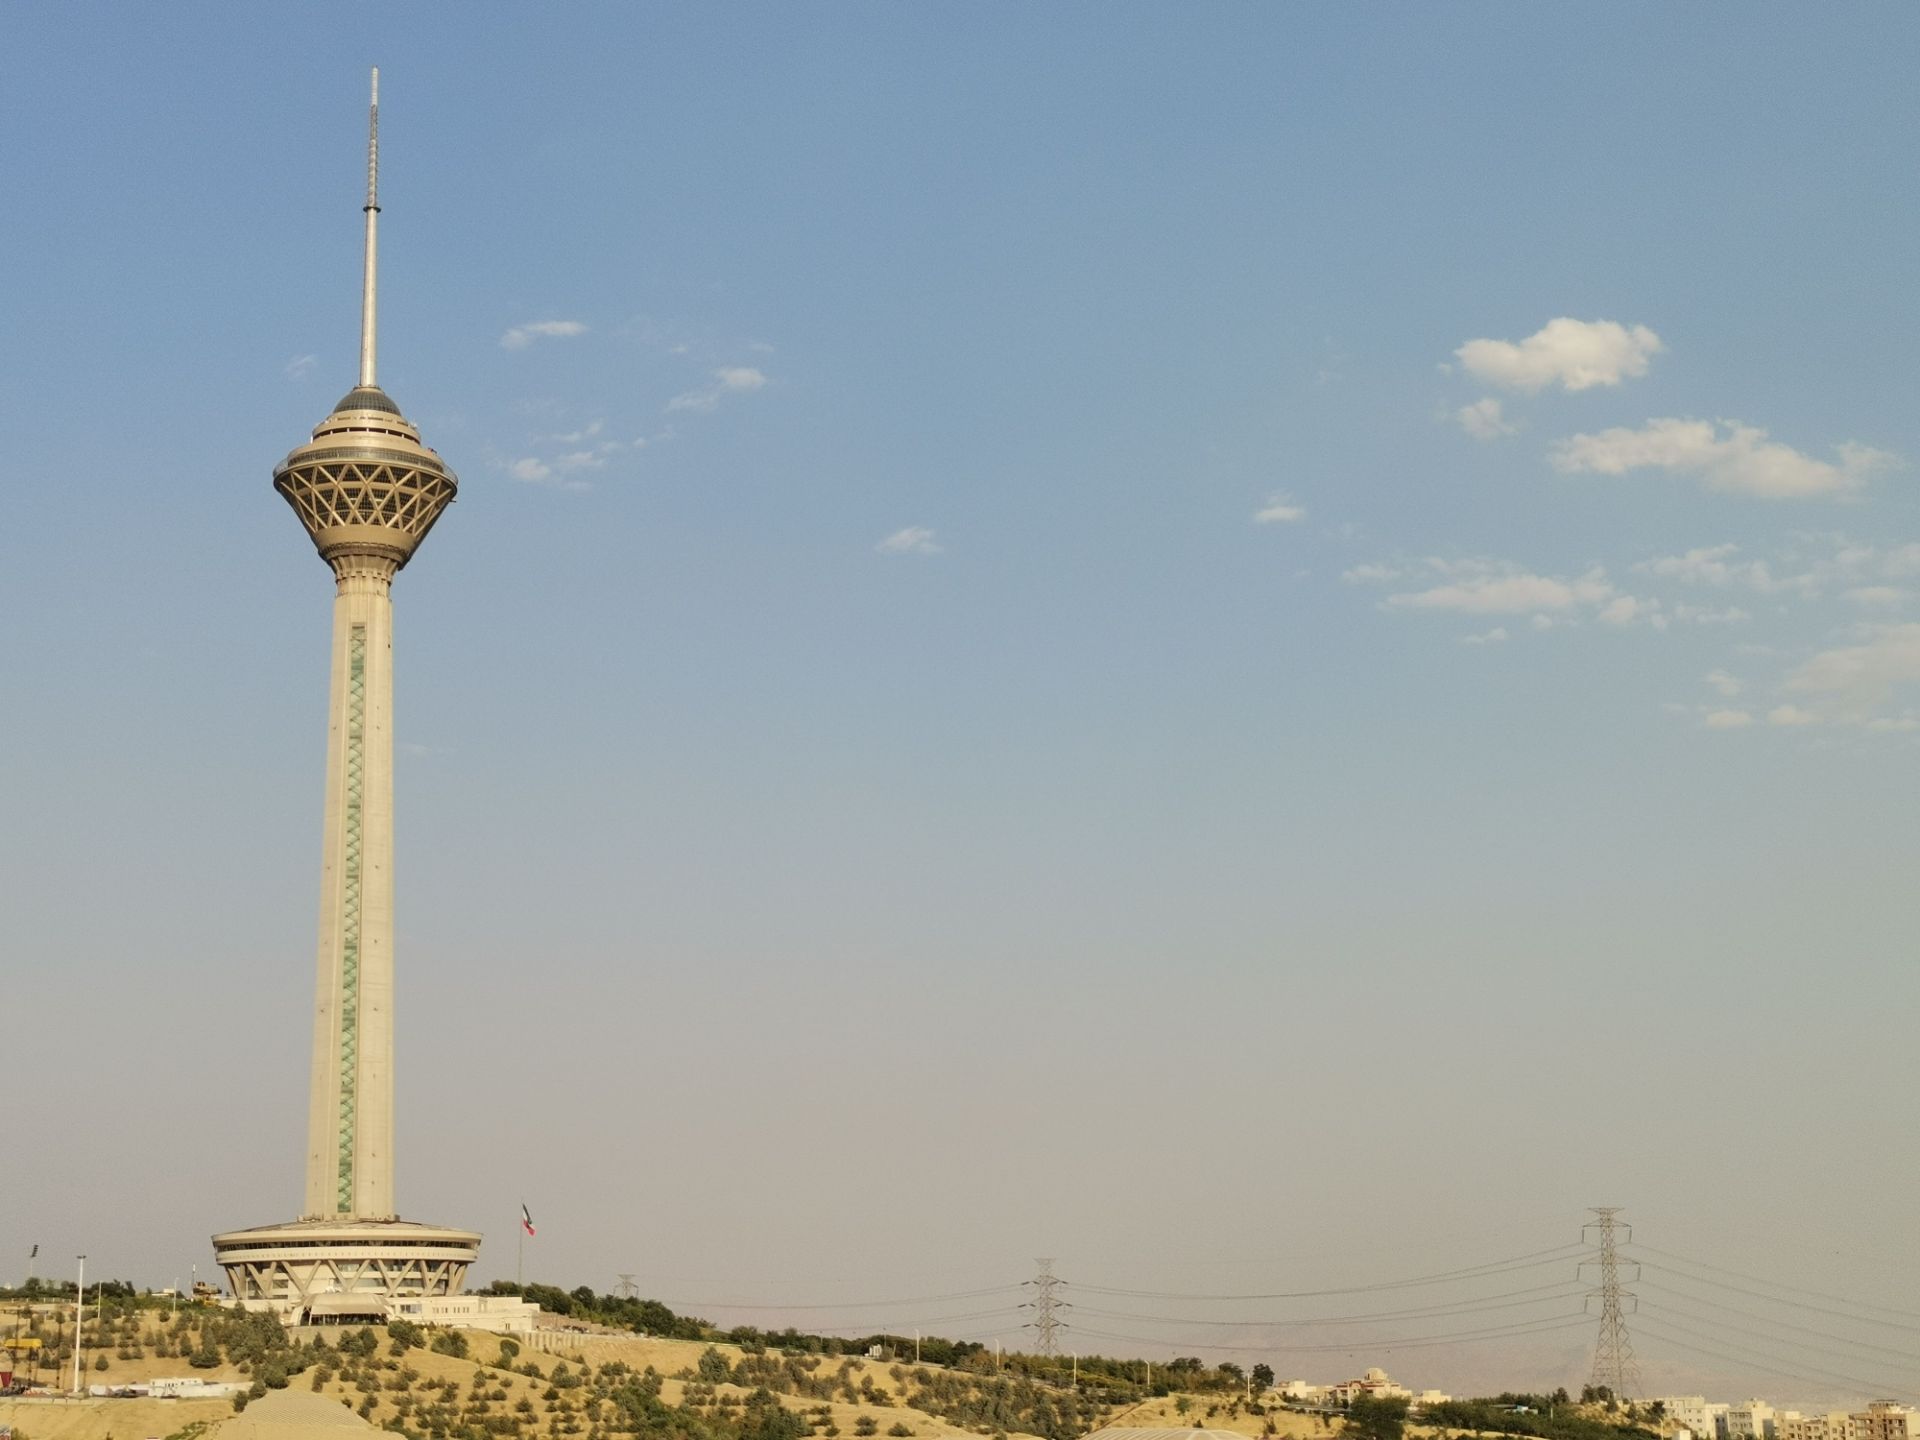 مرجع متخصصين ايران نمونه عكس اخبار تخصصي 2 برابري هواوي نوا 7 آي - برج ميلاد